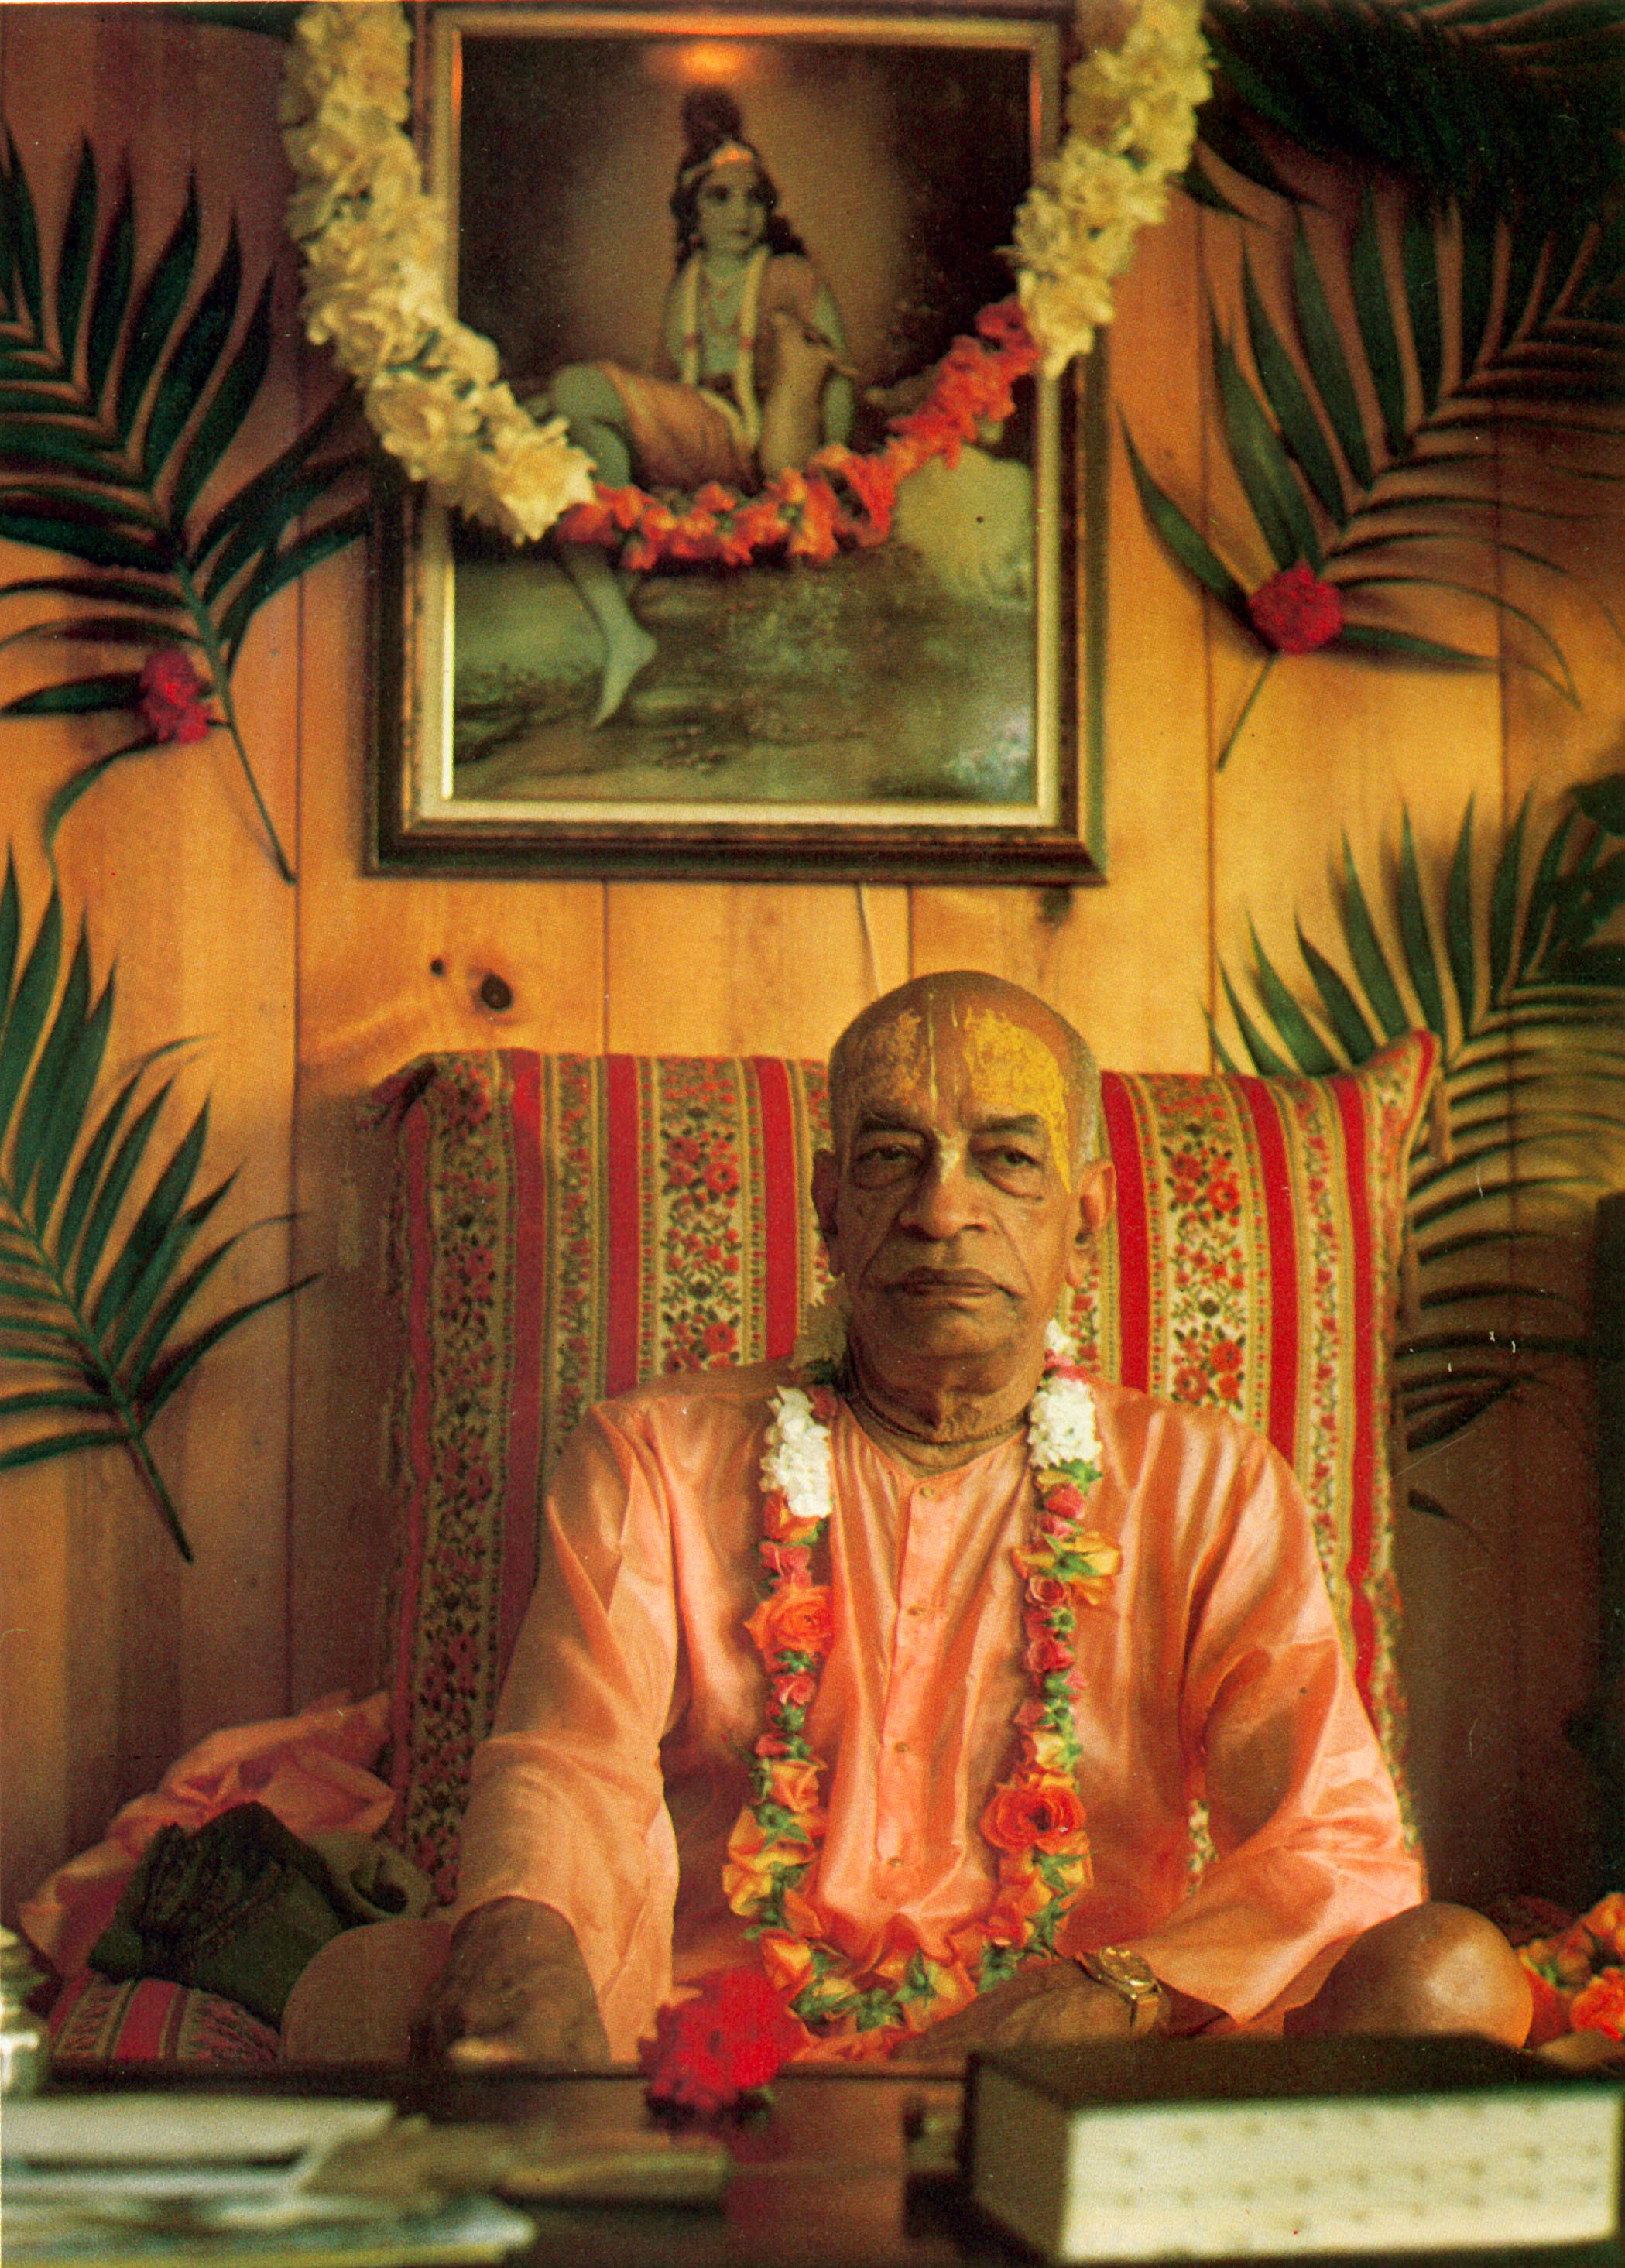 His Divine Grace, A. C. Bhaktivedanta Swami Prabhupada